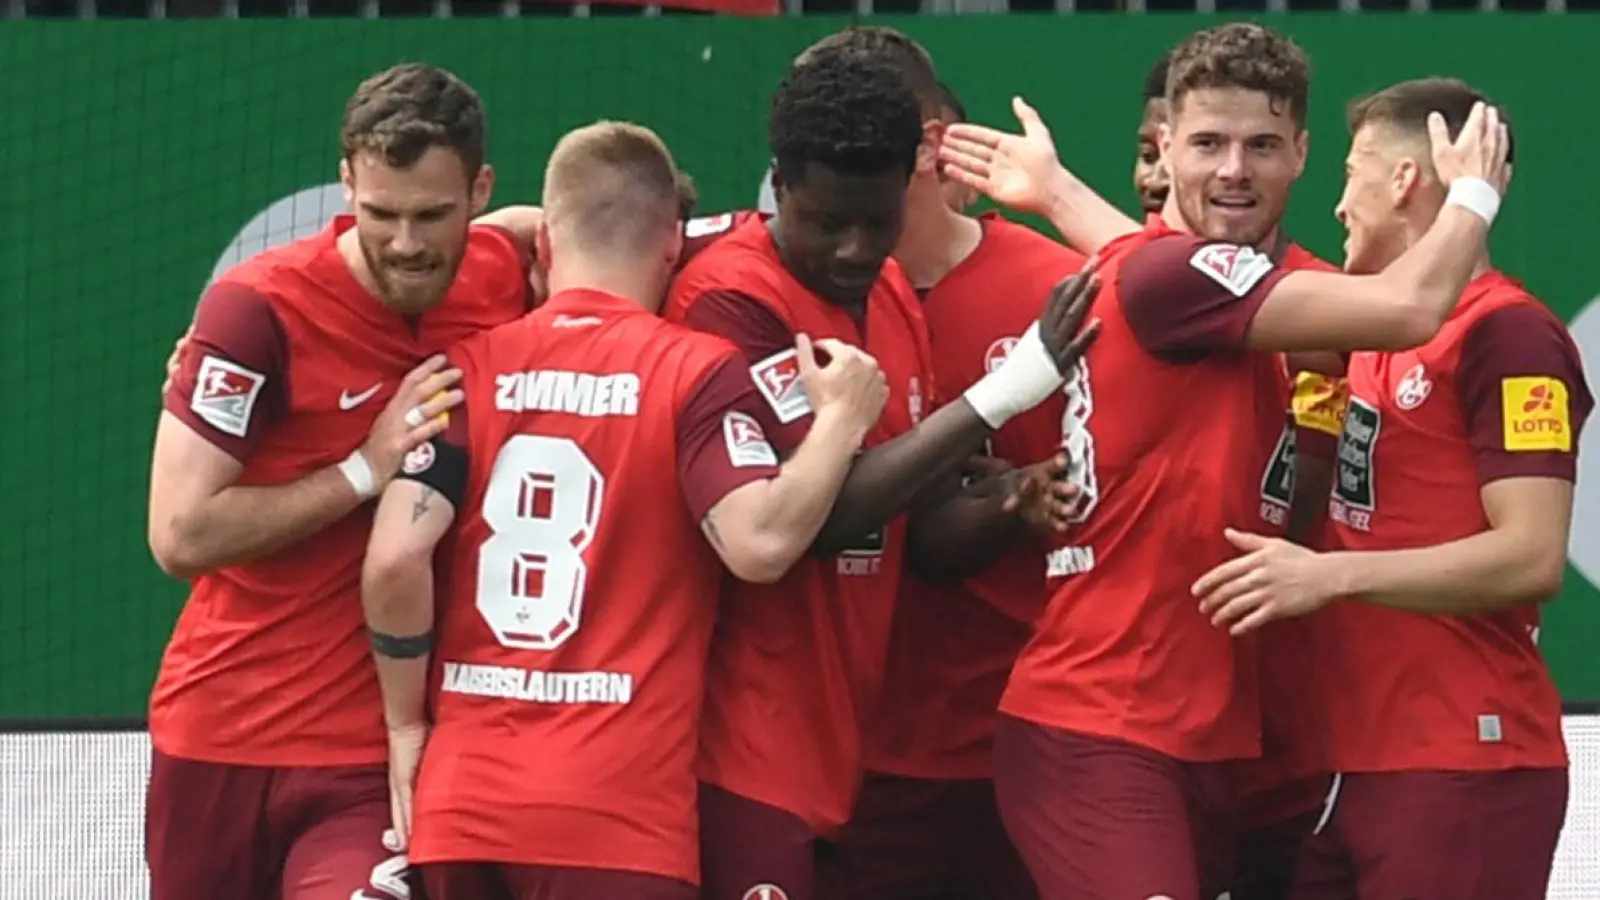 Kaiserslautern feiert einen wichtigen Sieg im Abstiegskampf beim Spitzenteam Holstein Kiel. (Foto: Daniel Bockwoldt/dpa)